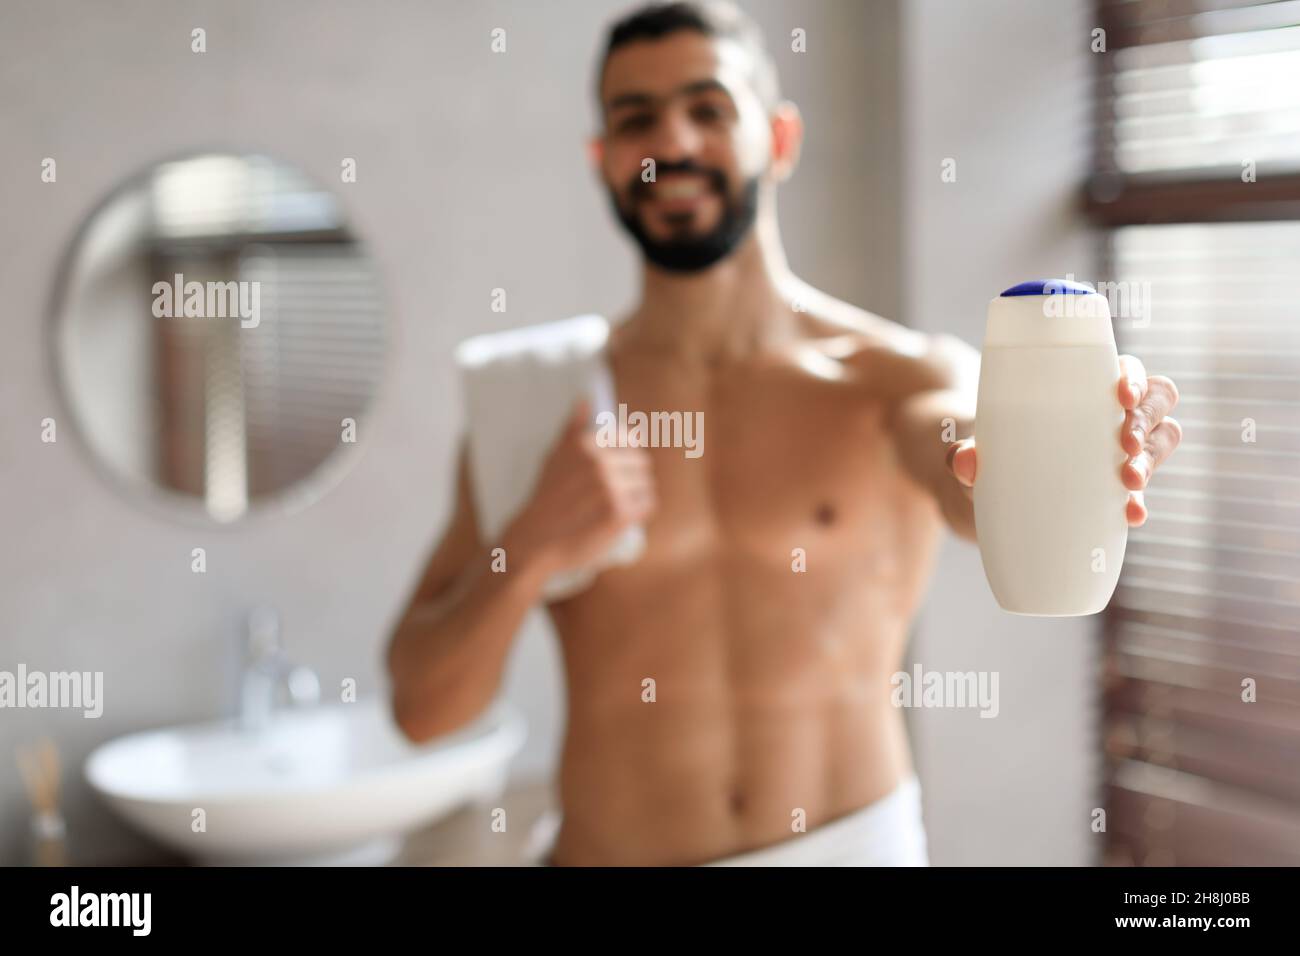 Beau jeune homme debout avec une bouteille de shampooing dans les mains Banque D'Images